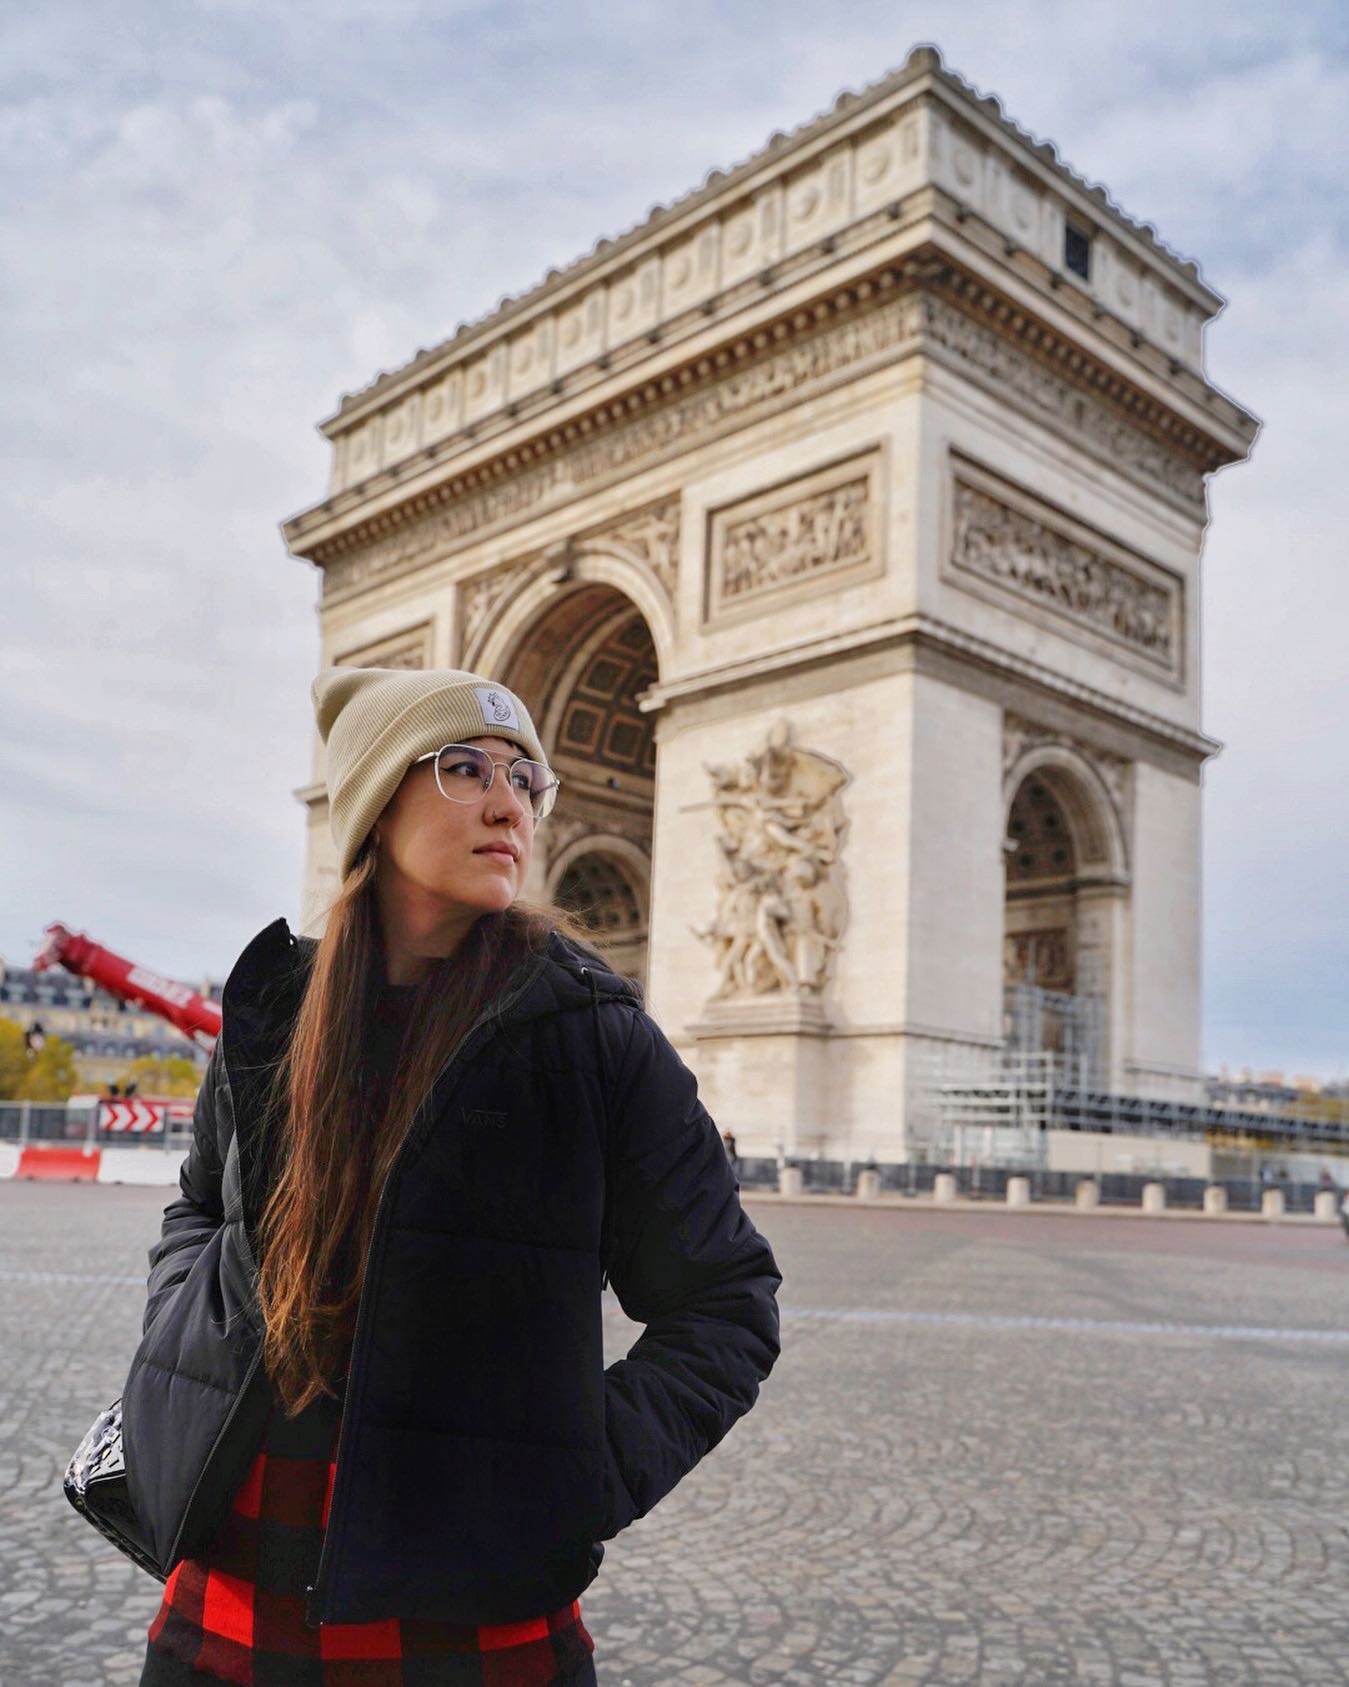 .
⚡️París⚡️
.
Pues para no gustarnos París ya hemos estado varias veces😅. Es una opinión bastante impopular y la gente alucina cuando lo decimos.
.
Y a ti, ¿te gusta París o regulinchi como a nosotros? 🤪
.
#viajesglobetrotter #paris #france #mondofotodelmes #travelblogger #arcdetriomphe #TopParisPhoto #topeuropephoto #travelblog